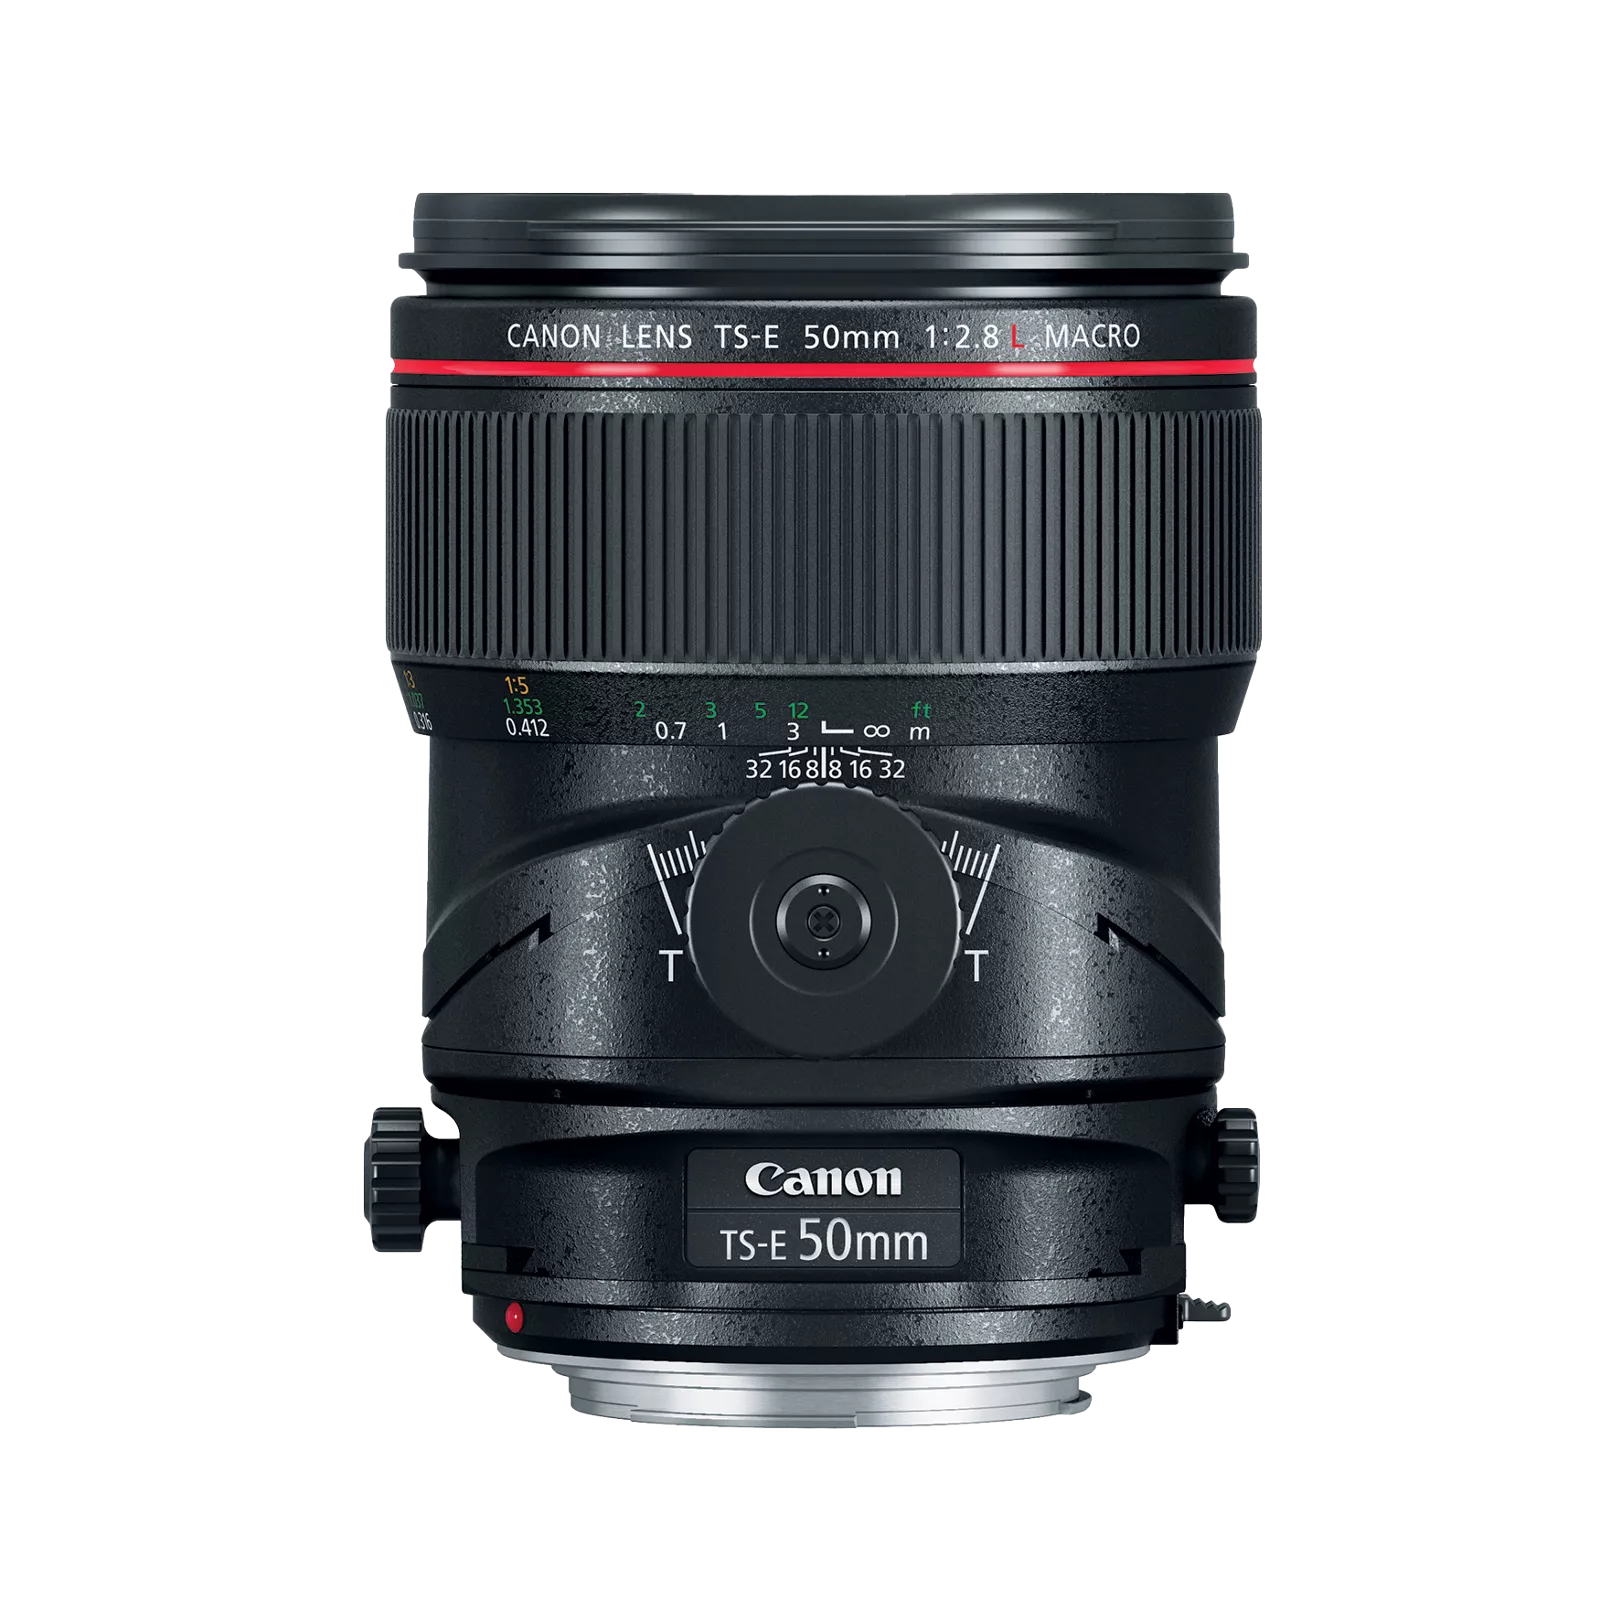 Canon TS-E 50mm f/2.8L MACRO